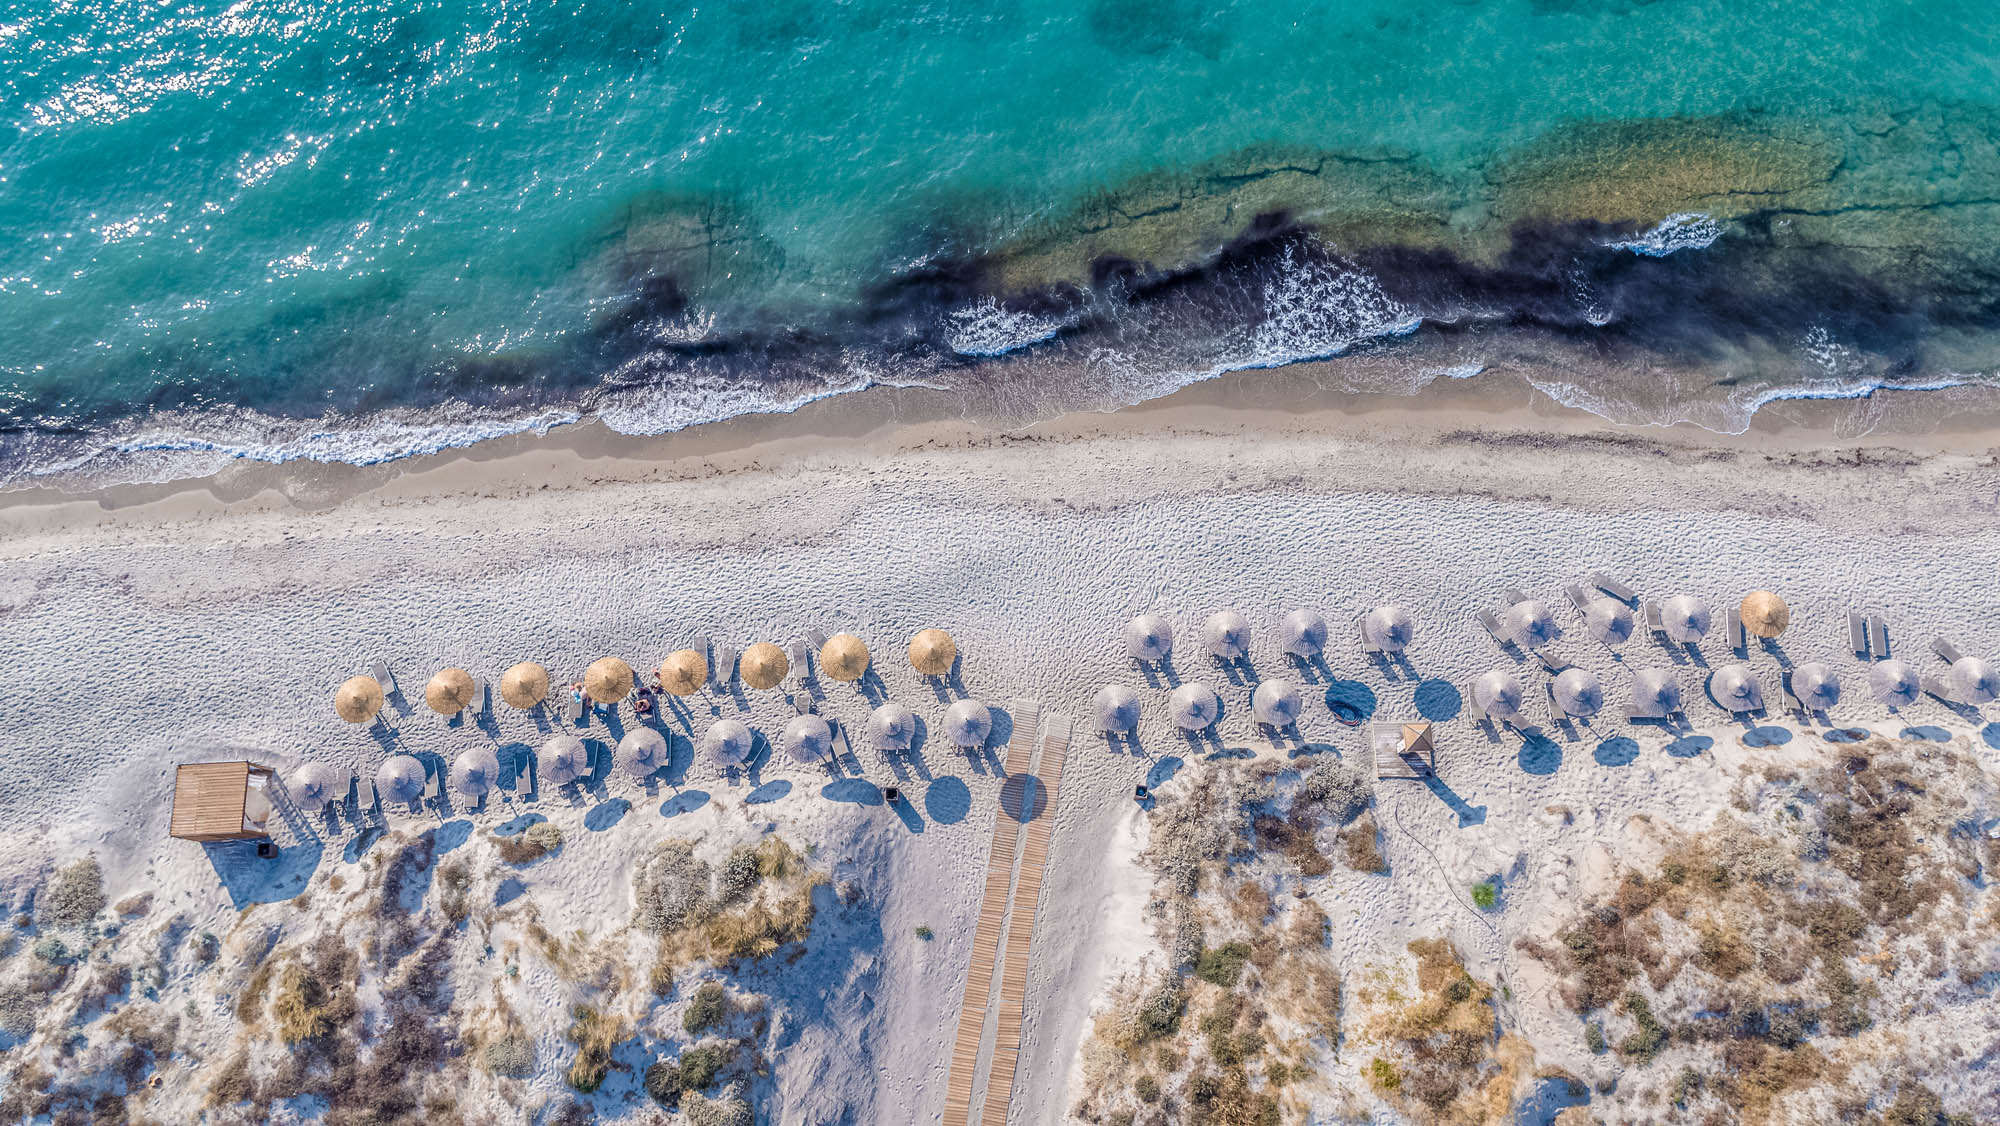 Piaszczysta i zagospodarowana plaża Marmari na Kos, widok z lotu ptaka